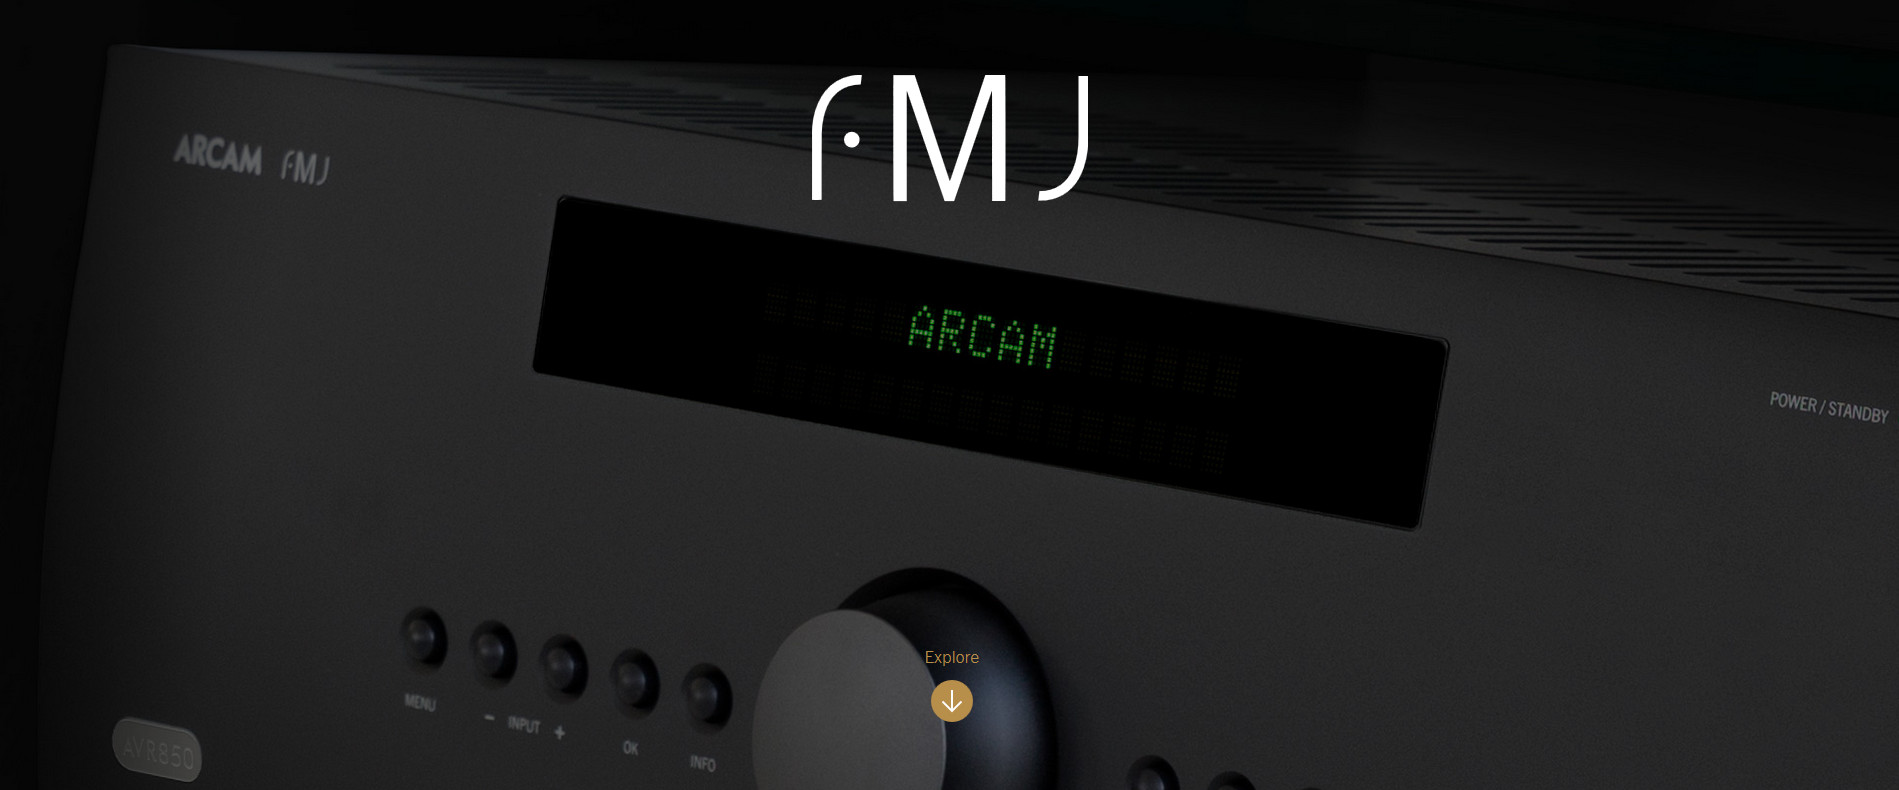 ARCAM AV860 ARCAM P429 sowie Integra und Anthem AV Receiver bei visions&more erhältlich ! ARCAM,INTEGRA,ANTHEM bei visions&more